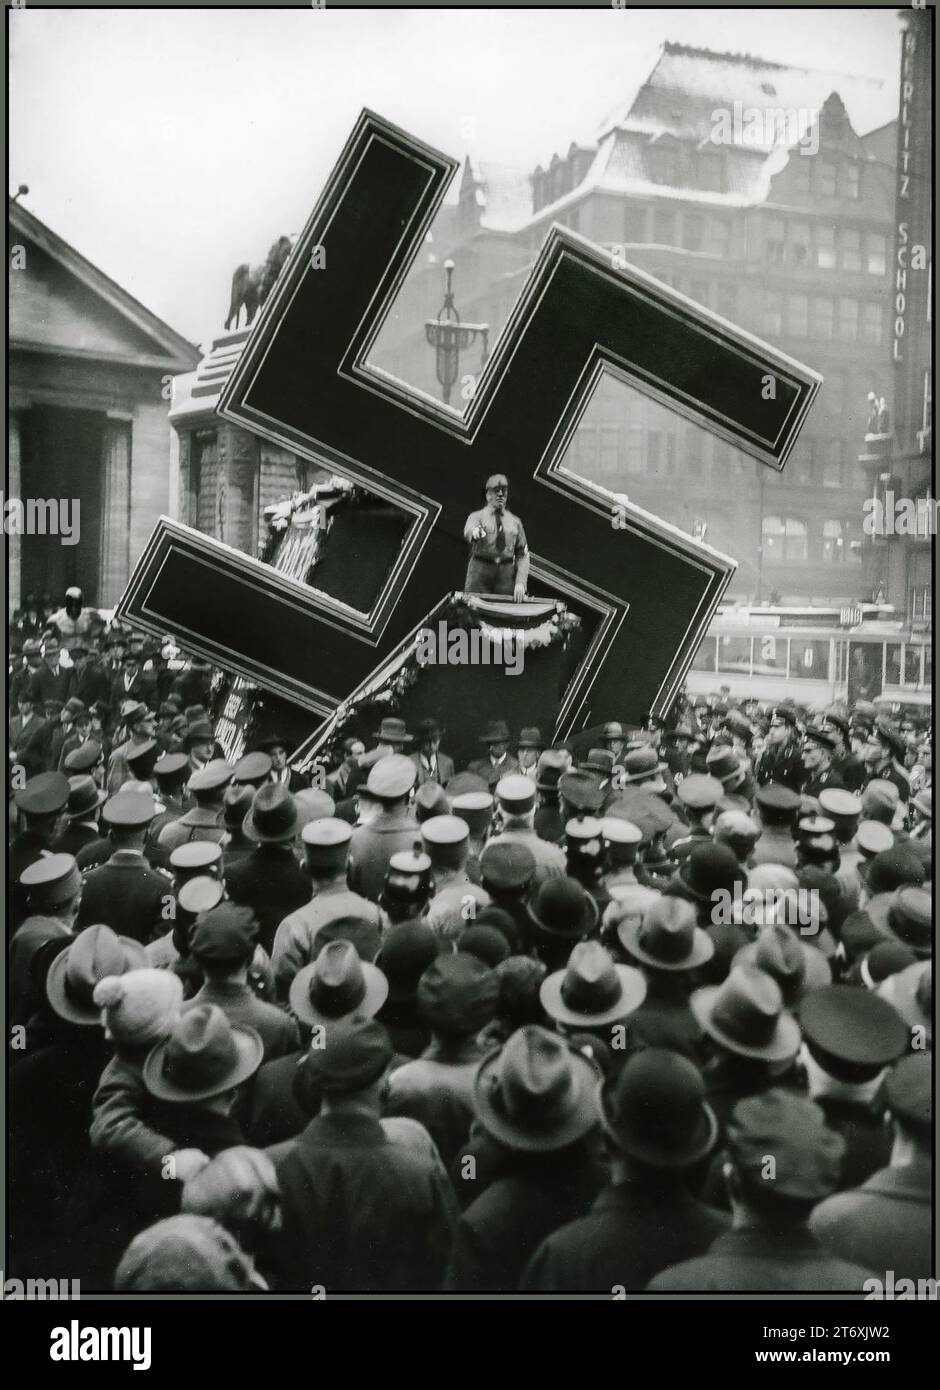 HAKENKREUZ STURMABTEILUNG-REDE MASSENPROPAGANDA NSDAP-Vorkriegs-Nazi-Kundgebung mit dem Hakenkreuz als große mobile Propagandastütze, wie hier auf einem Foto, das 1933 in Hamburg während einer NSDAP-Rede aufgenommen wurde Stockfoto